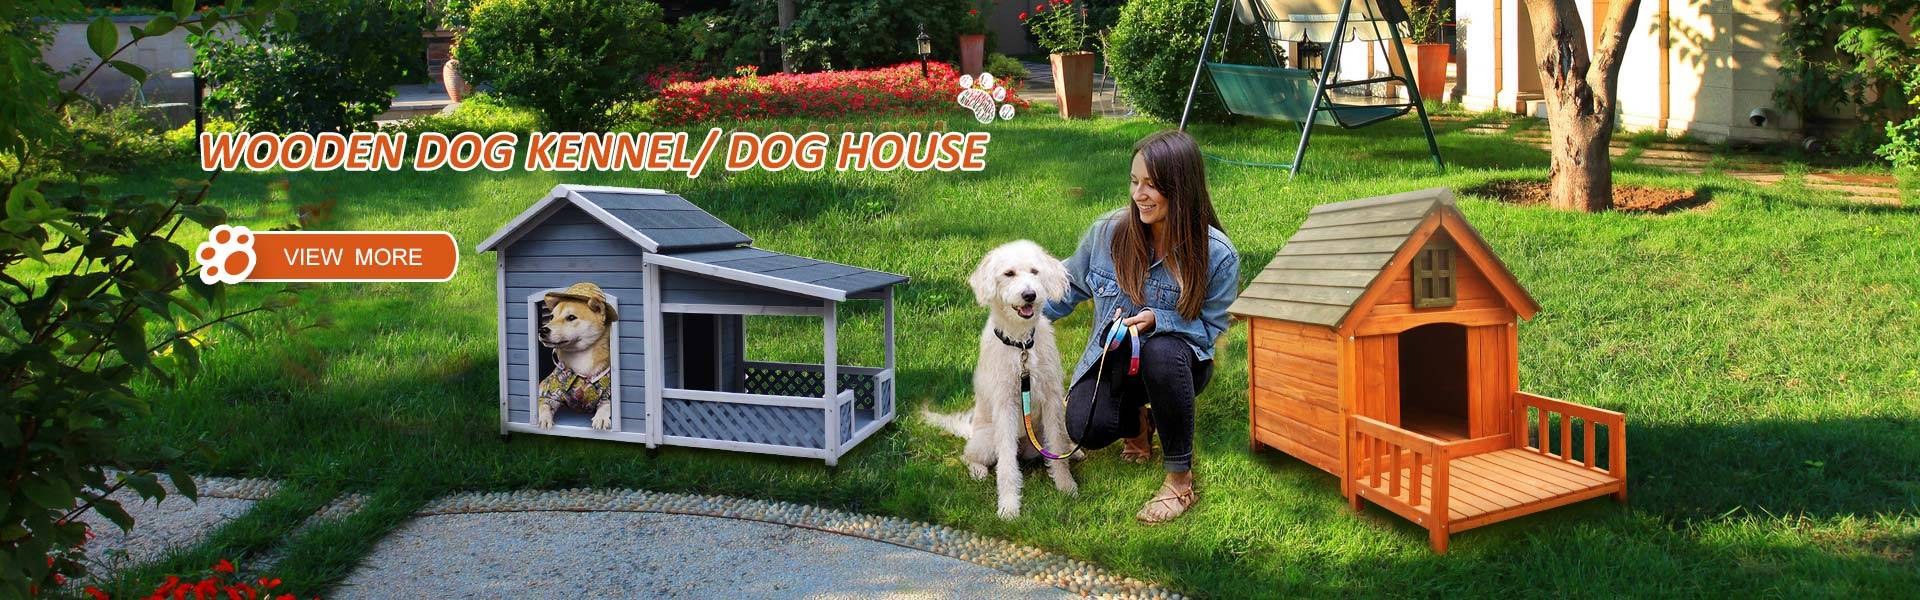 Wooden dog kennel/ dog house